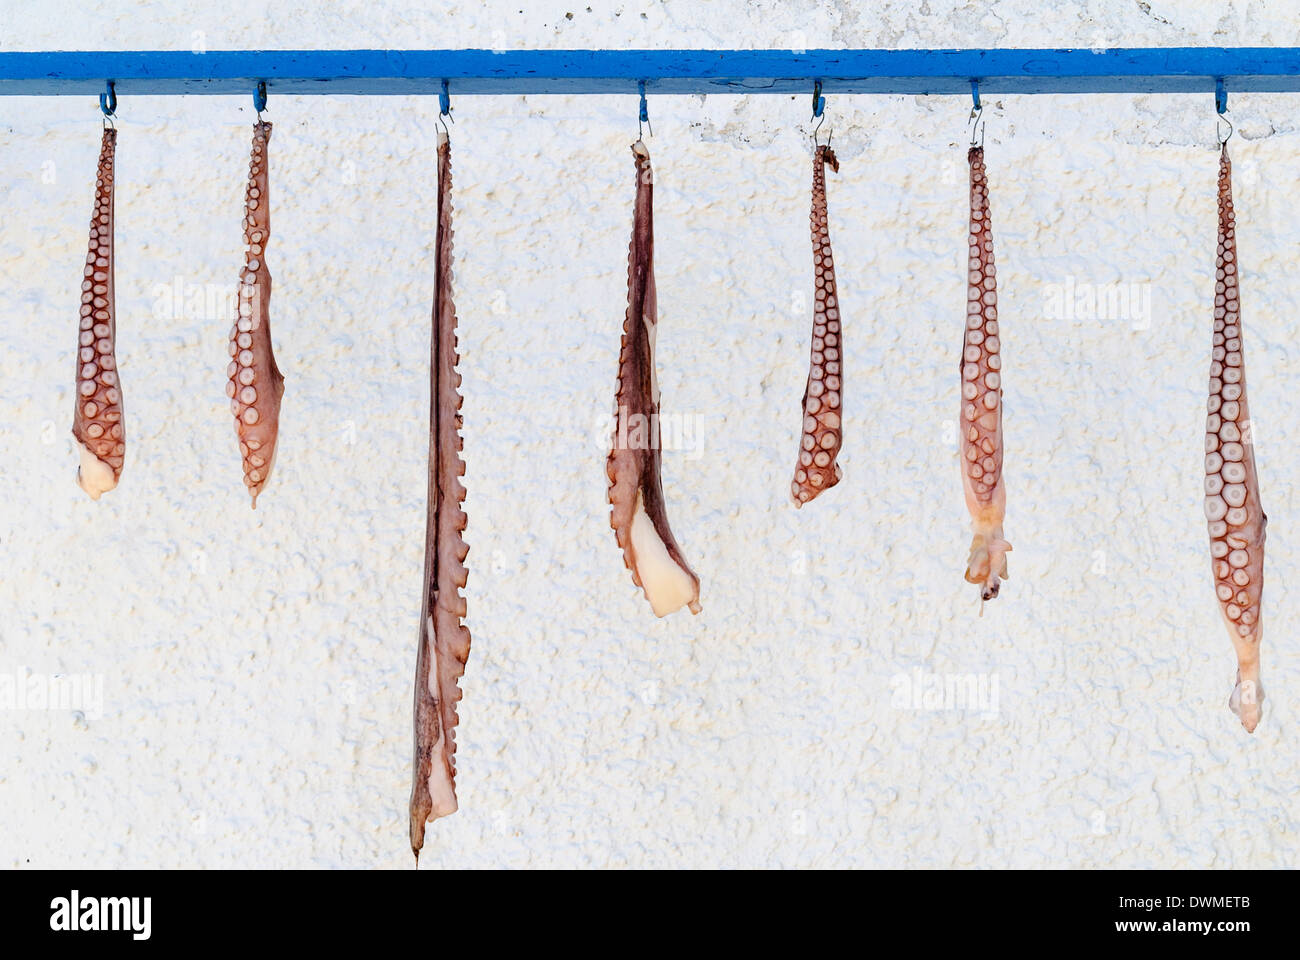 Pulpo tentáculos colgado a secar, Isla de Milos, Cyclades, Grecia Foto de stock